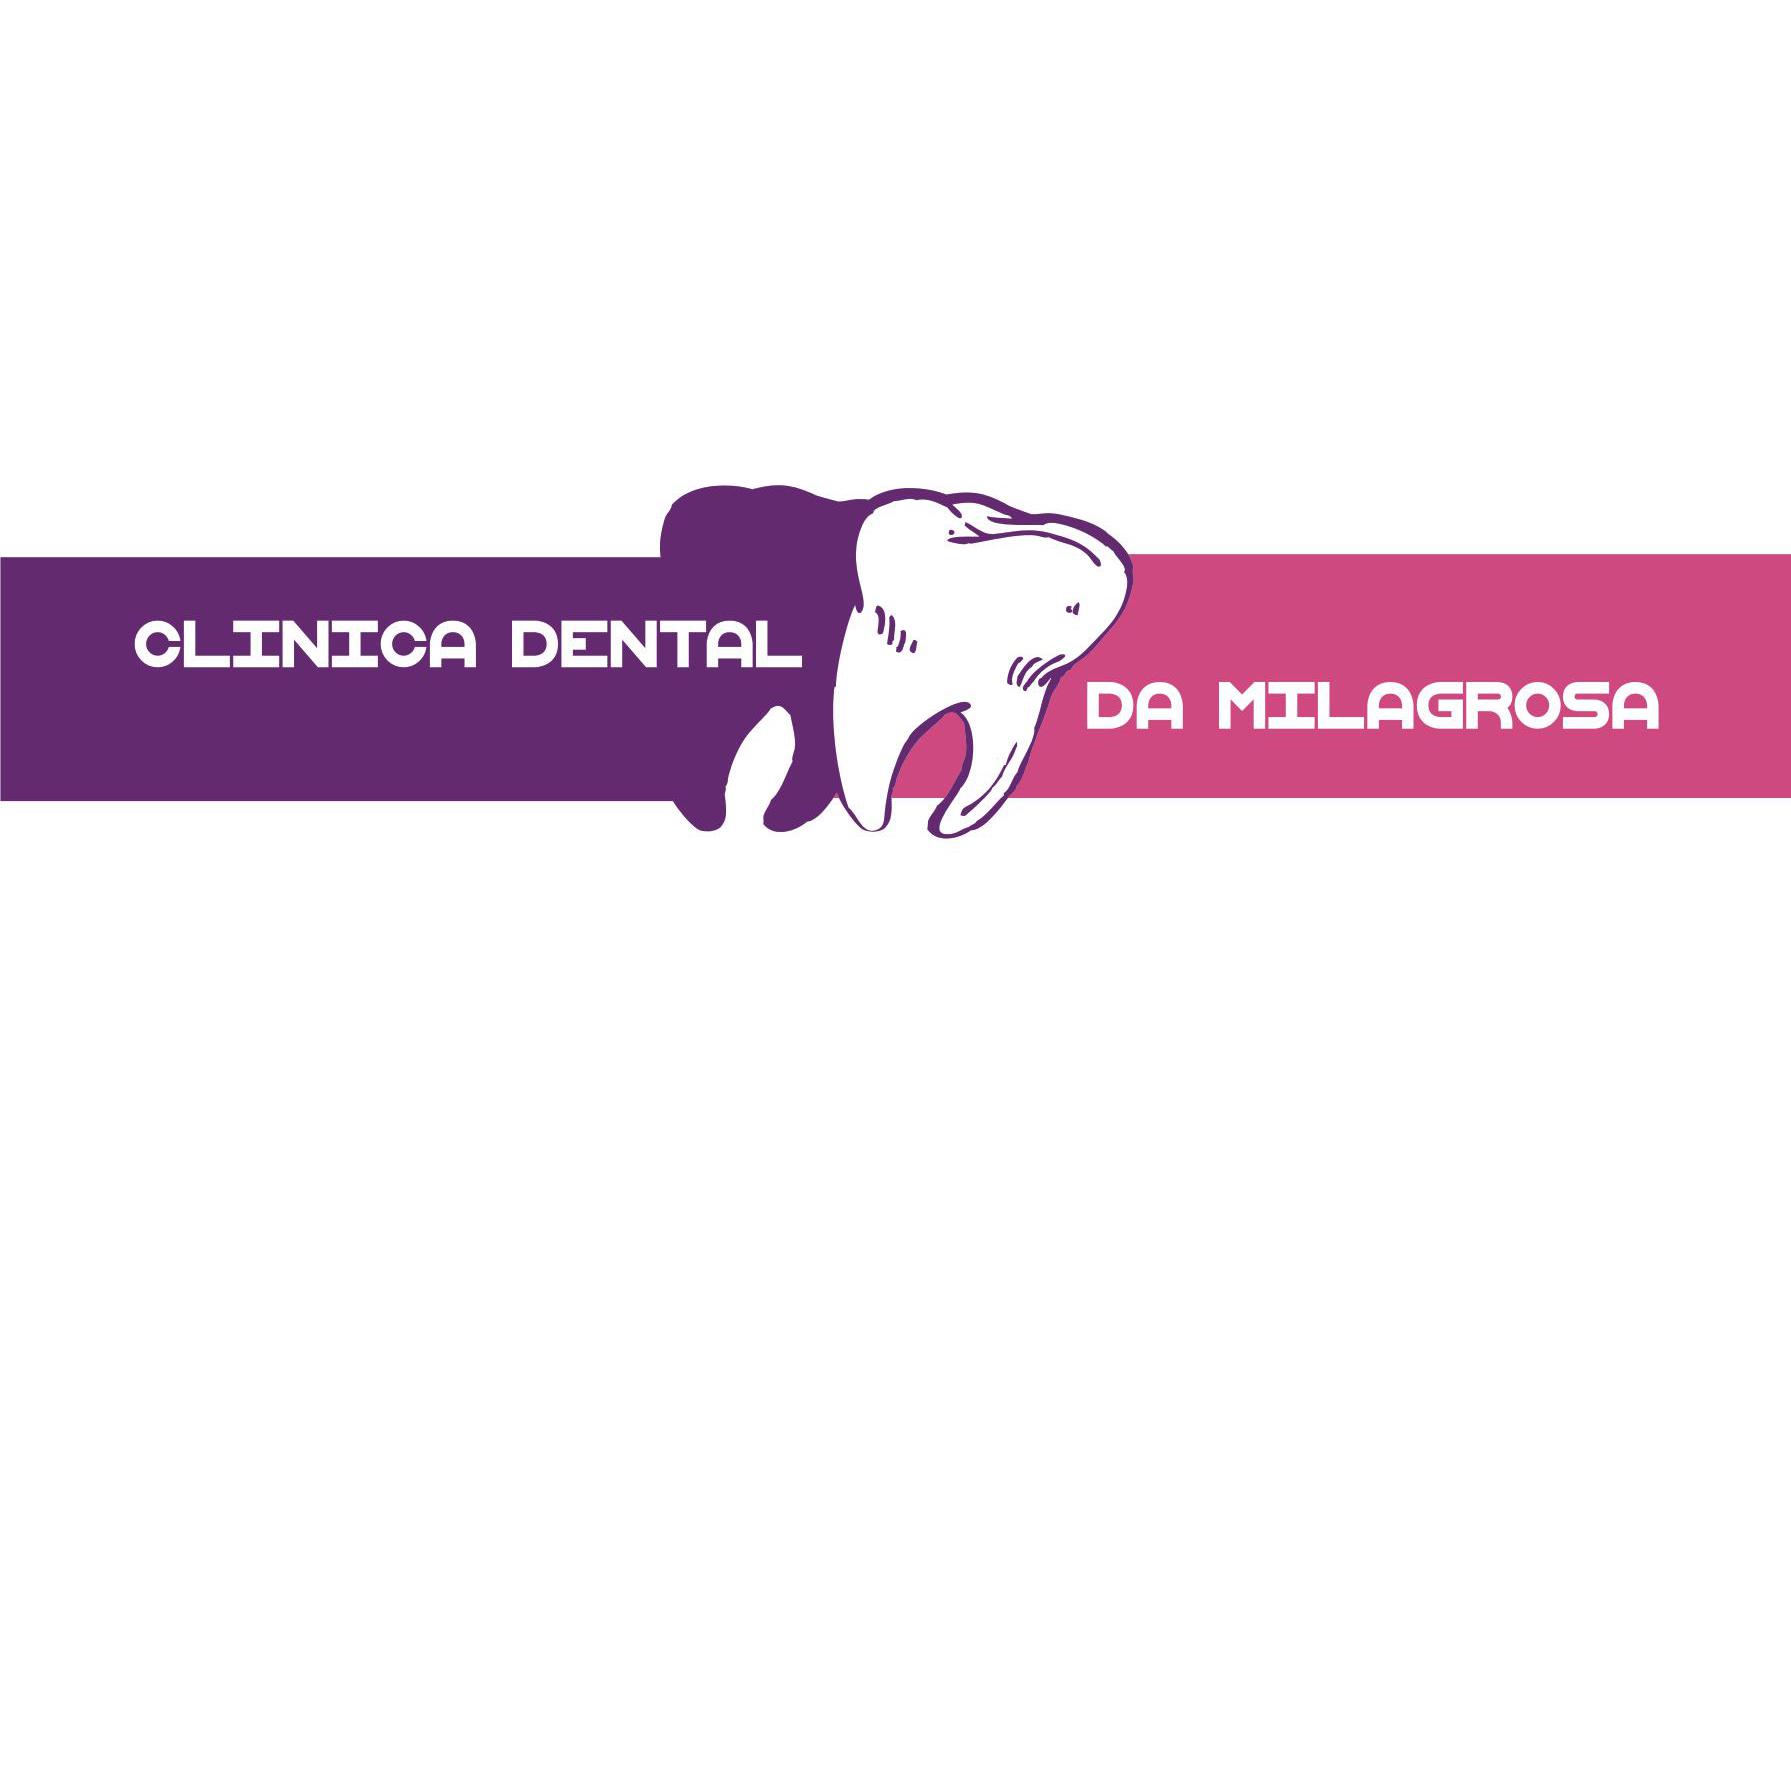 Clínica Dental da Milagrosa Logo